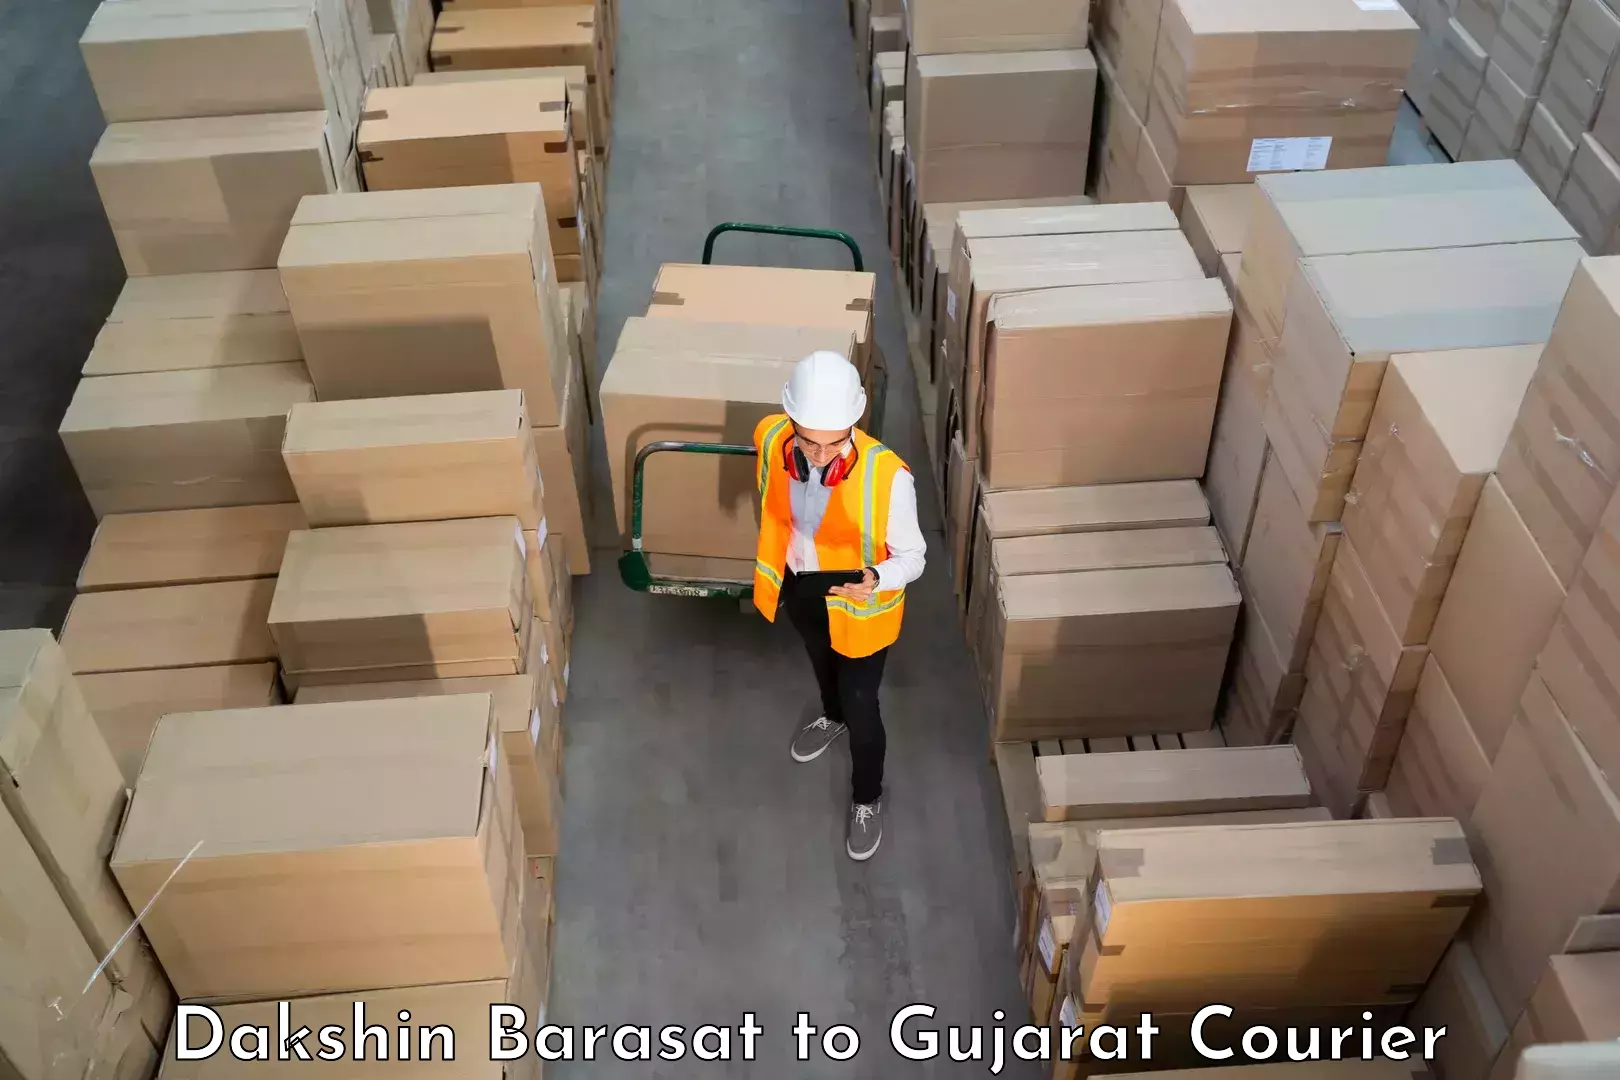 Furniture transport services Dakshin Barasat to Dhandhuka